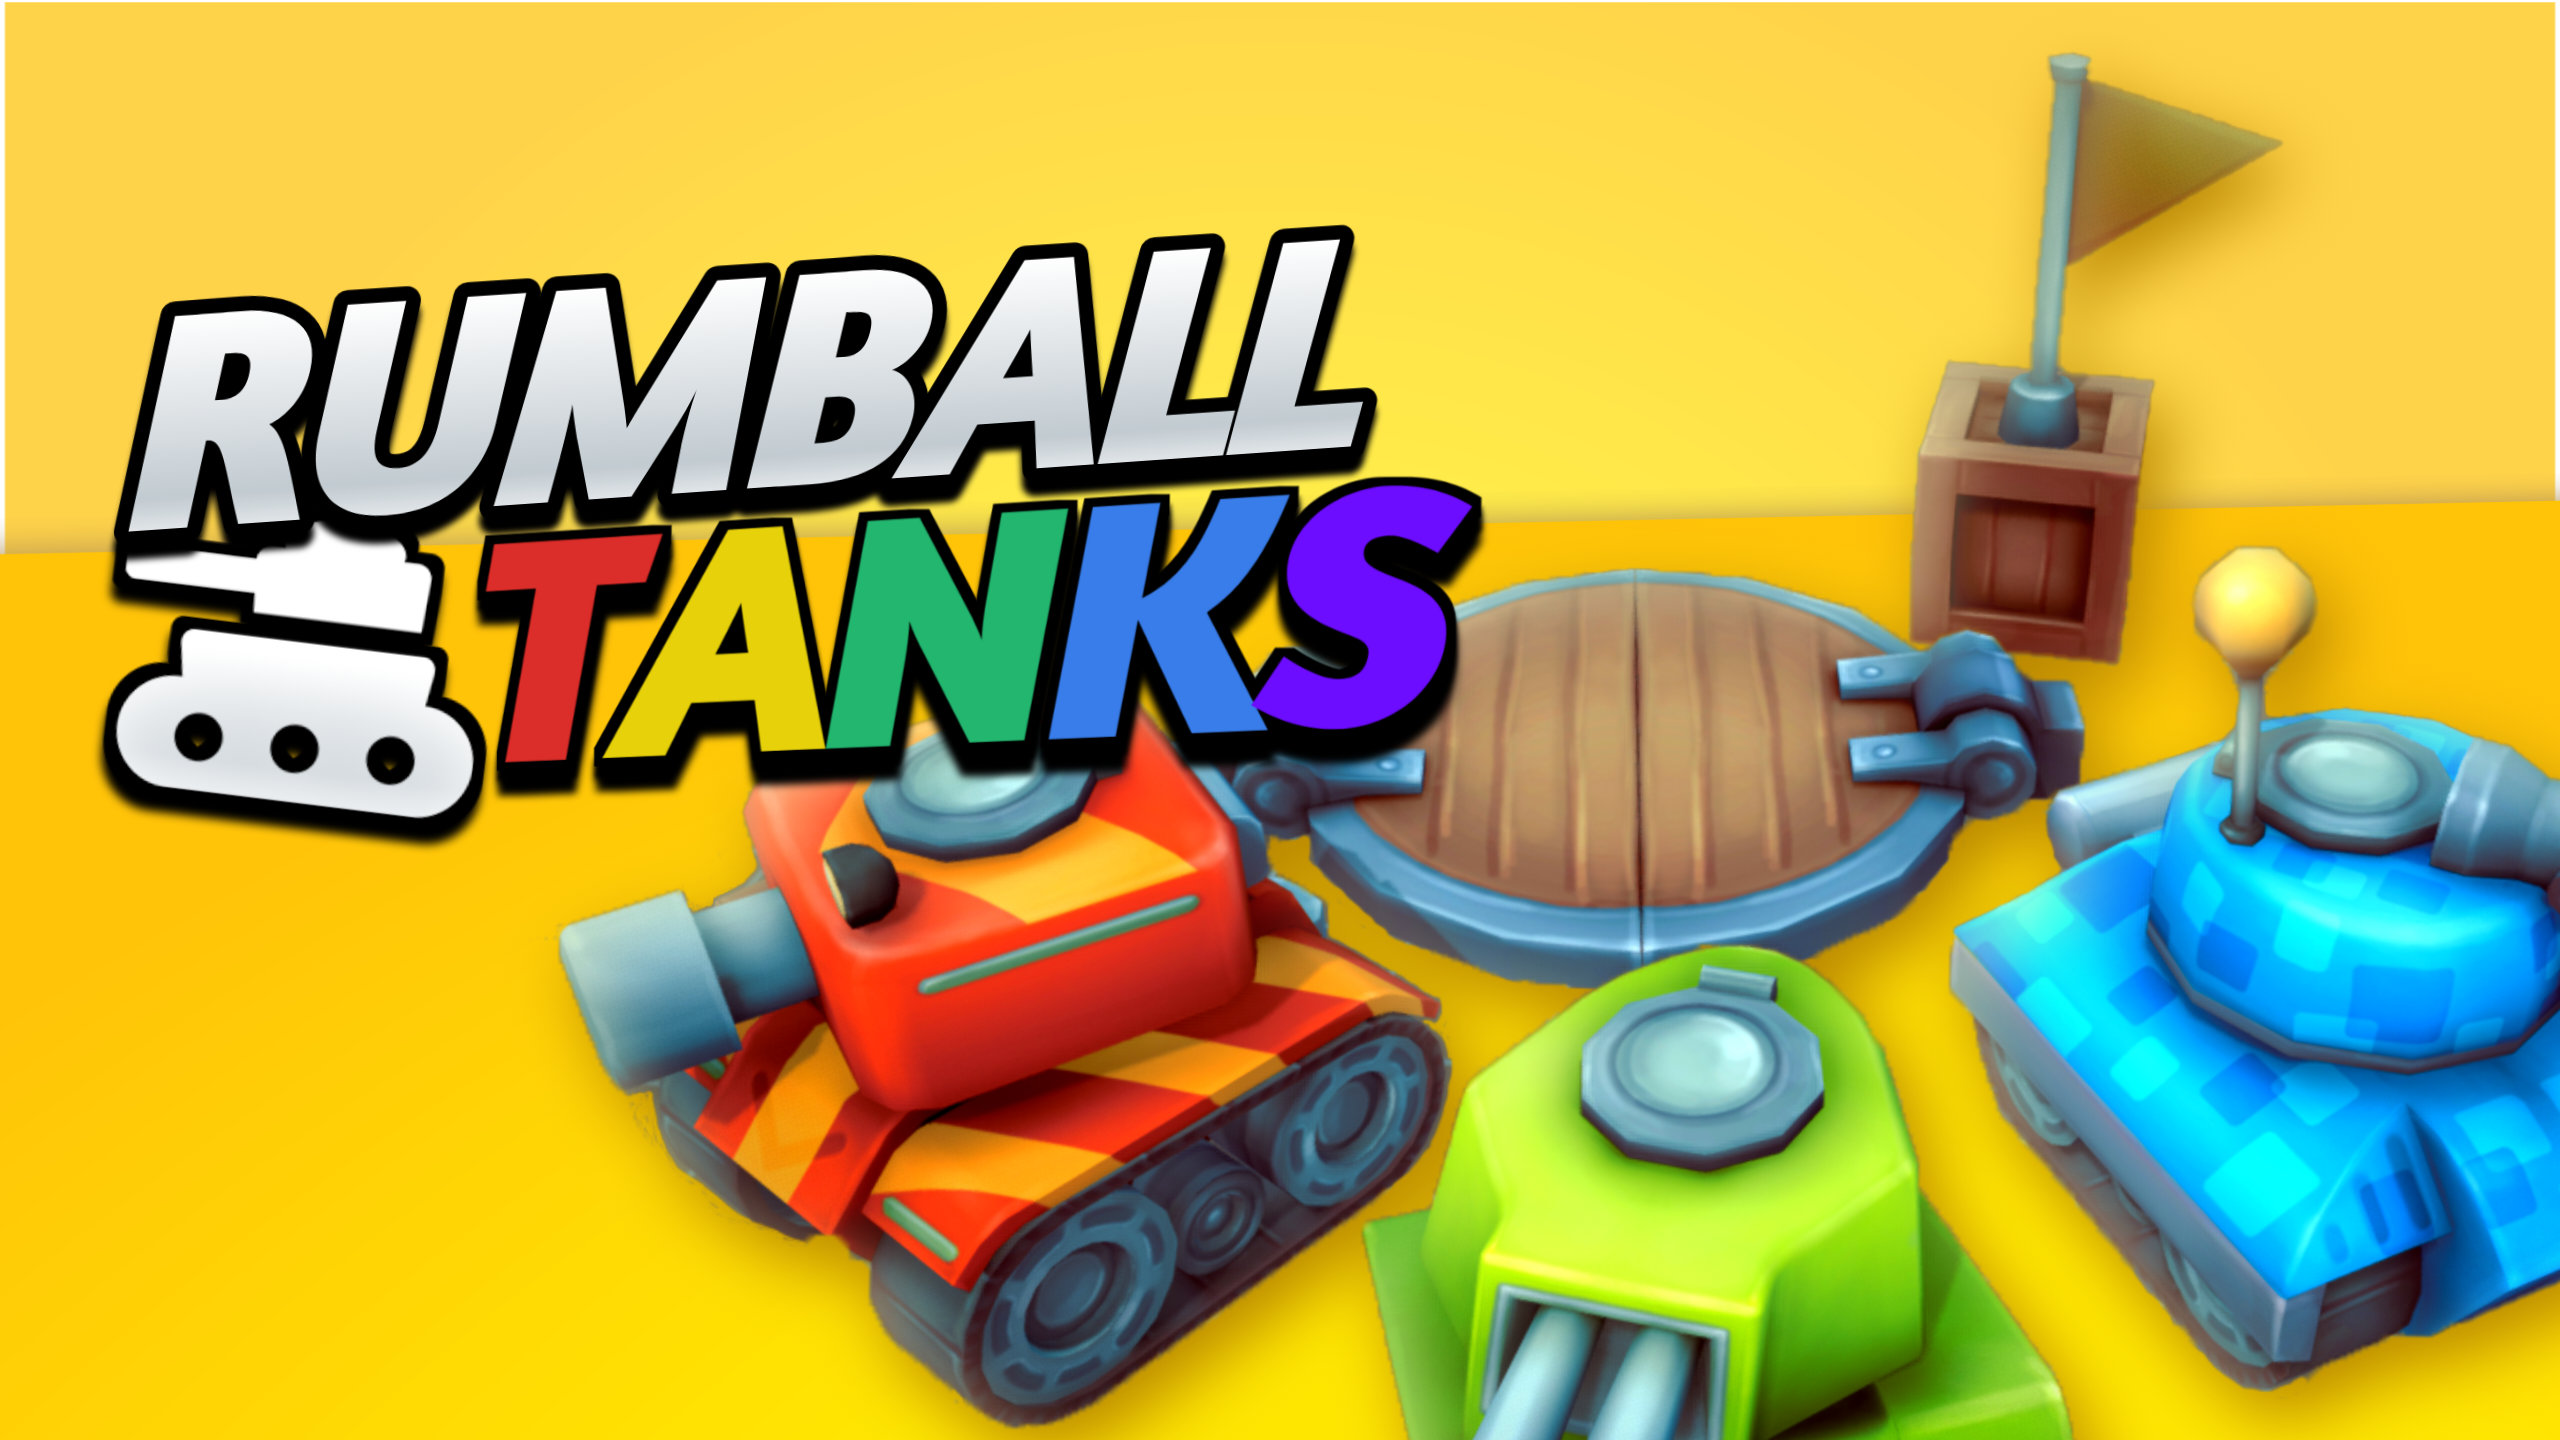 RumBall Tanks